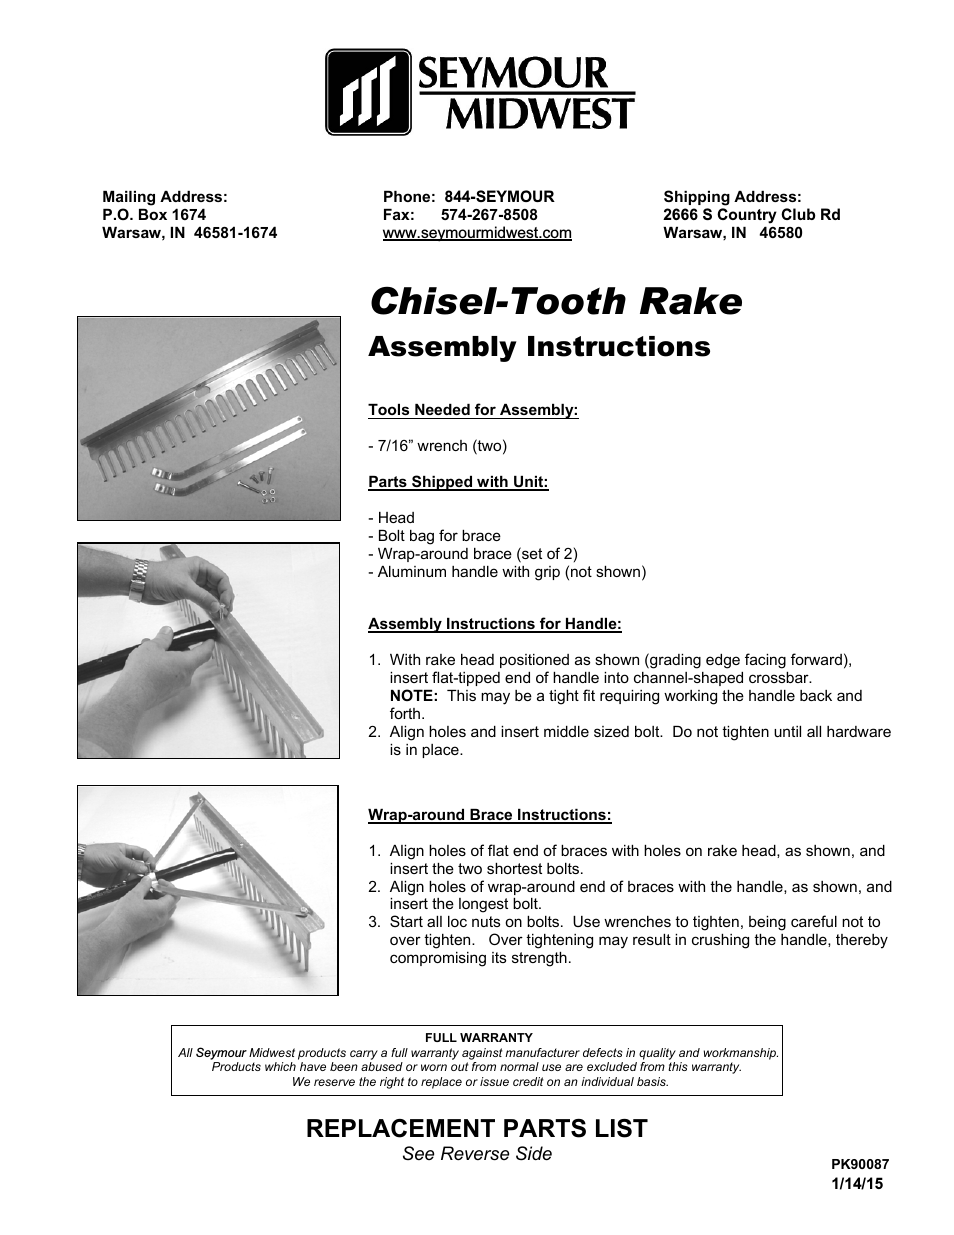 Chisel-Tooth Rake(PK90087)